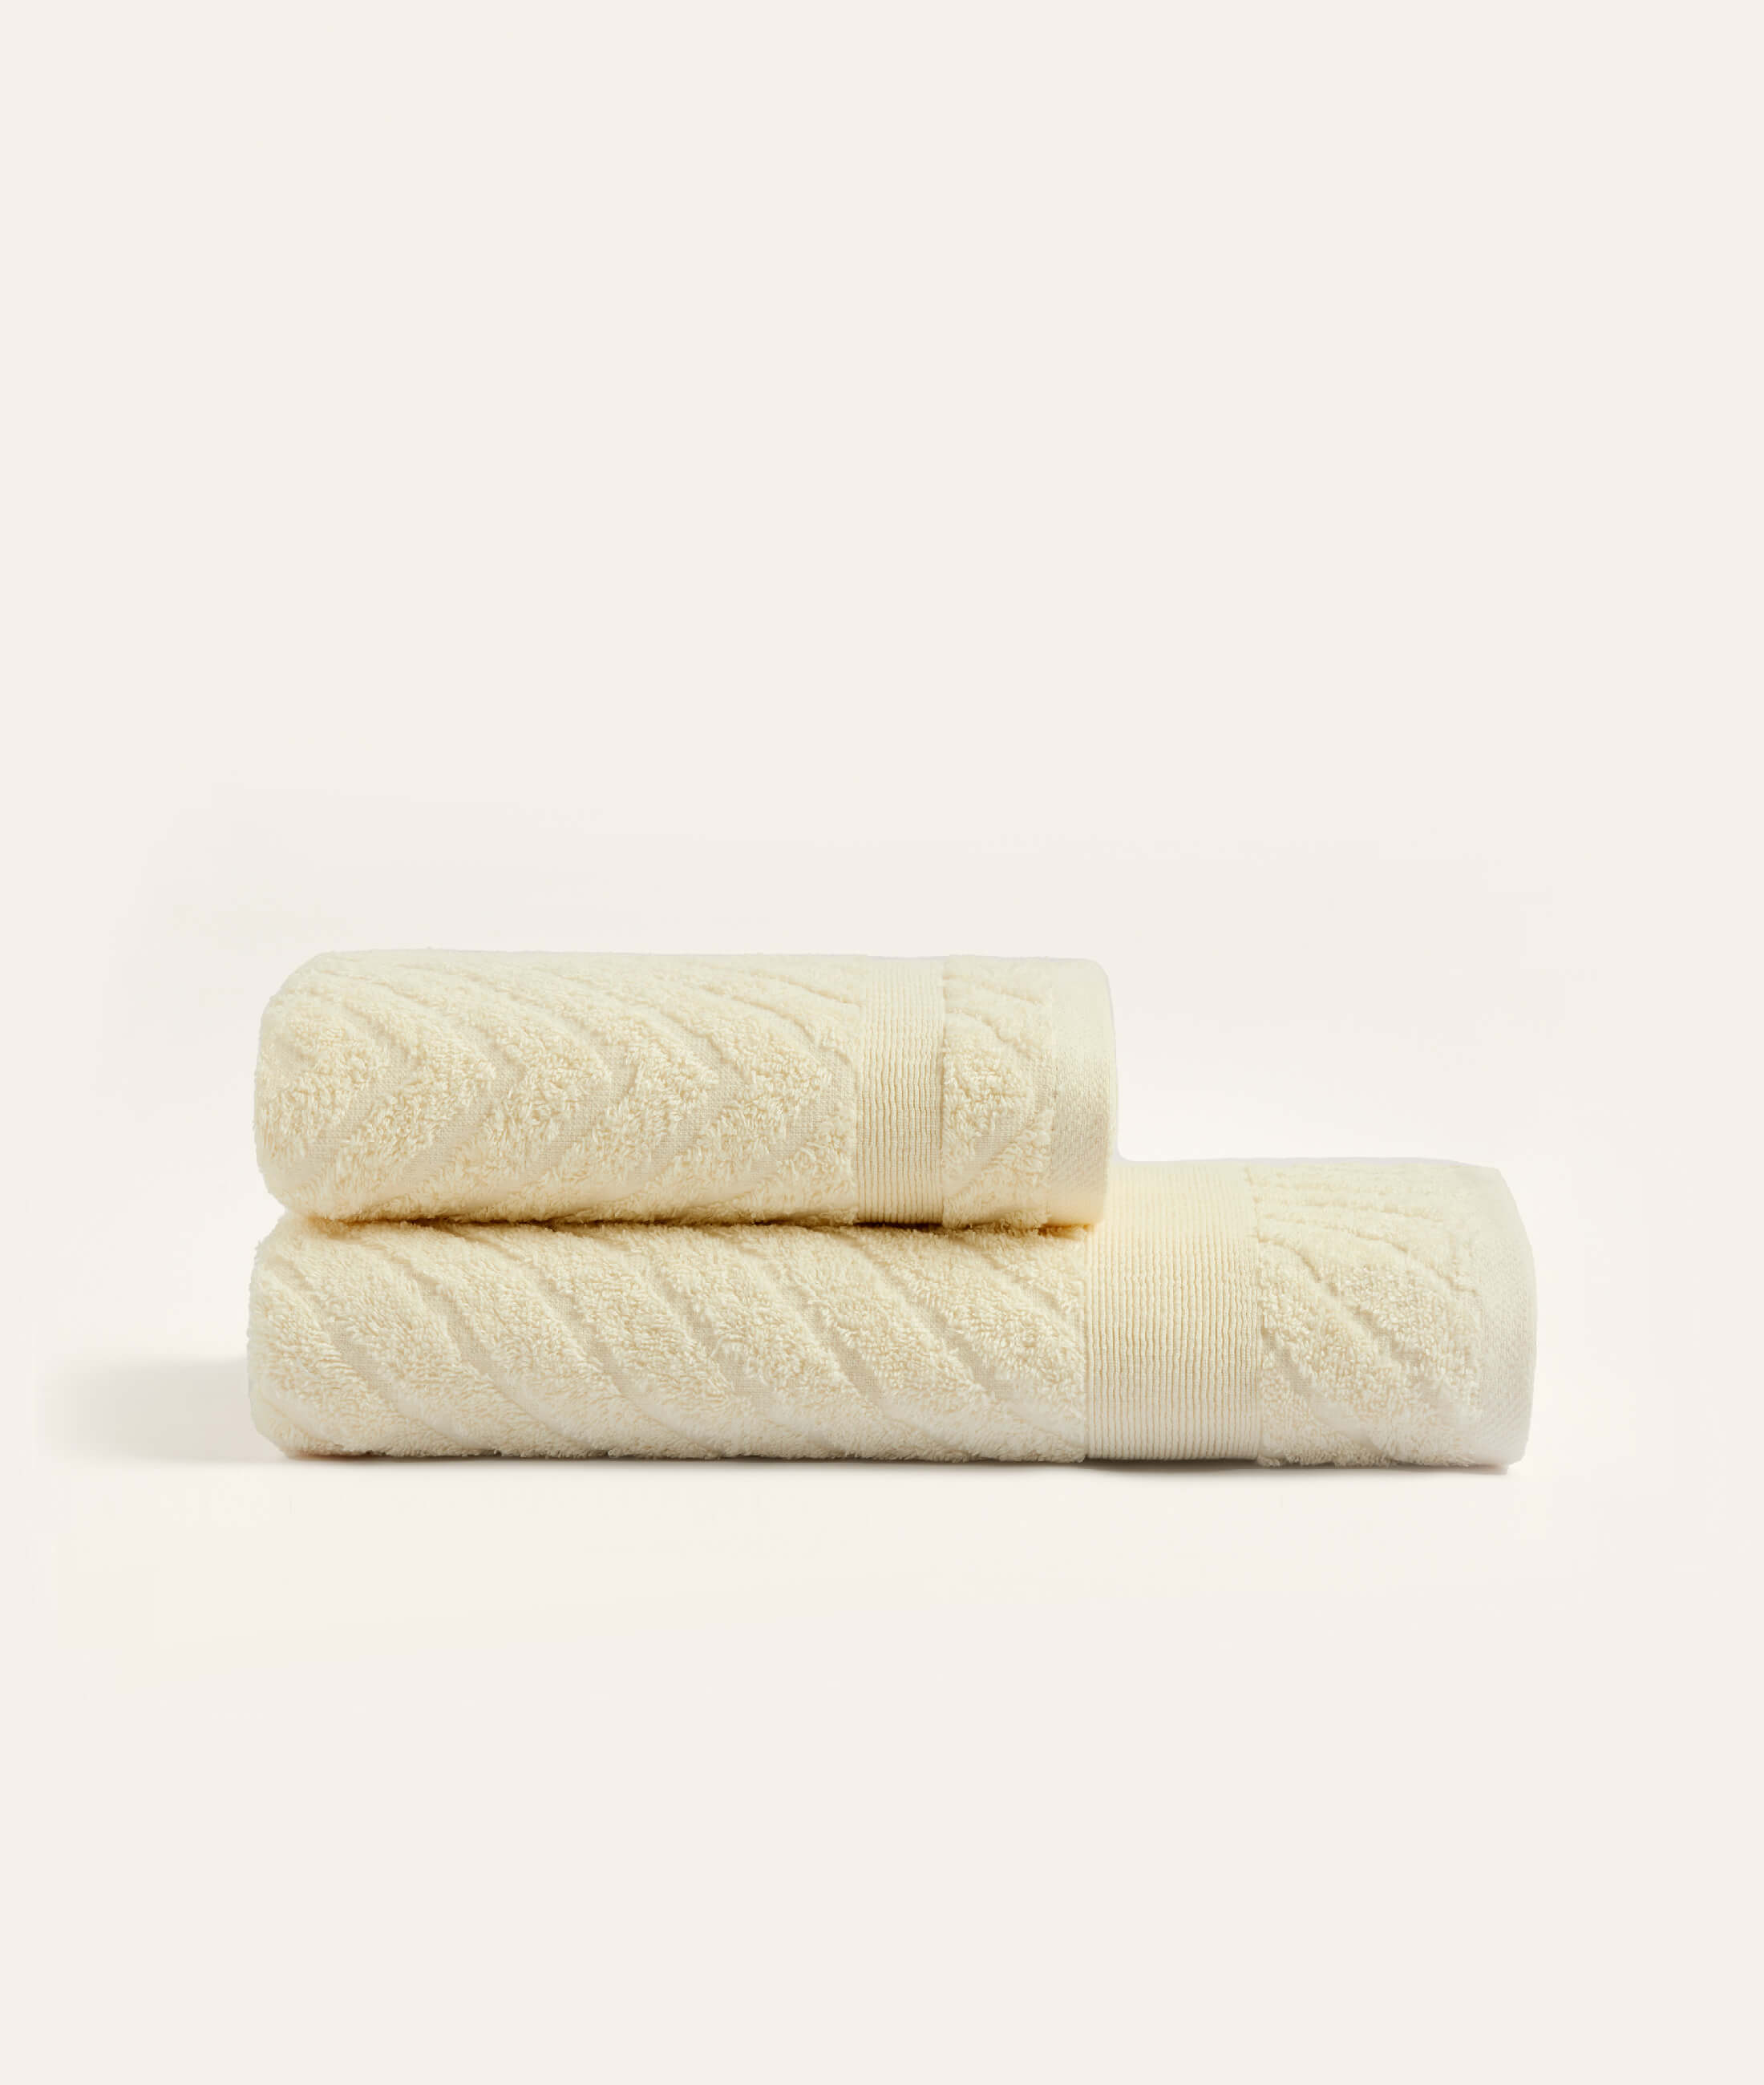 Lycian Jacquard Border Cream 2 Pcs Towel Set Herringbone 1029A